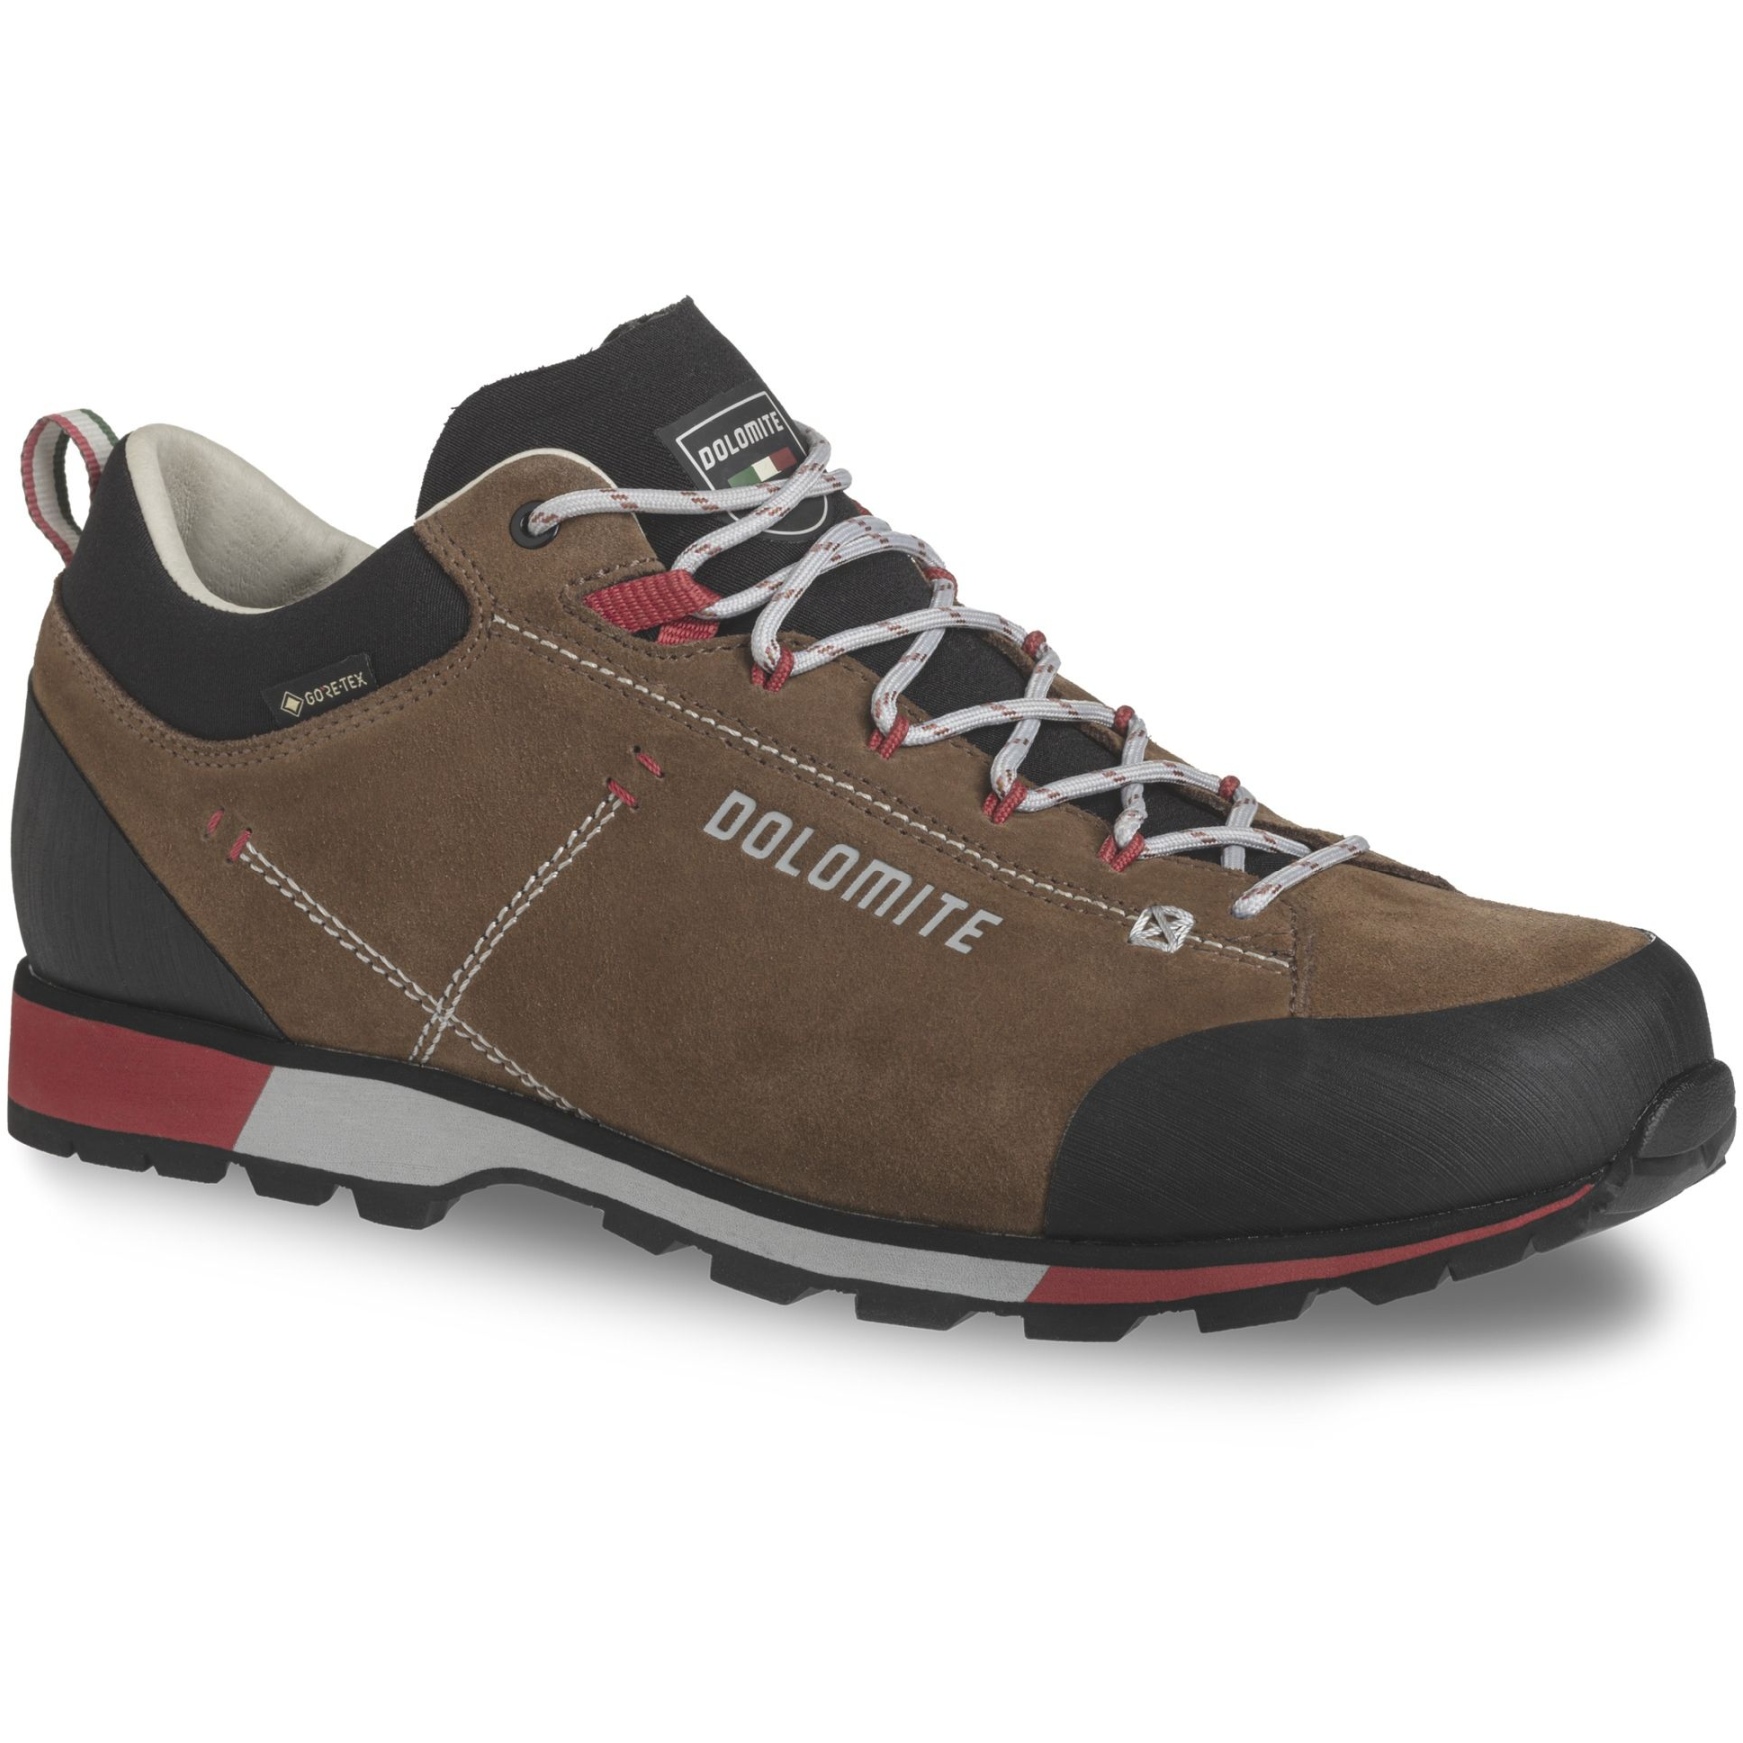 Productfoto van Dolomite 54 Hike Low Evo GORE-TEX Schoenen Heren - bronze brown